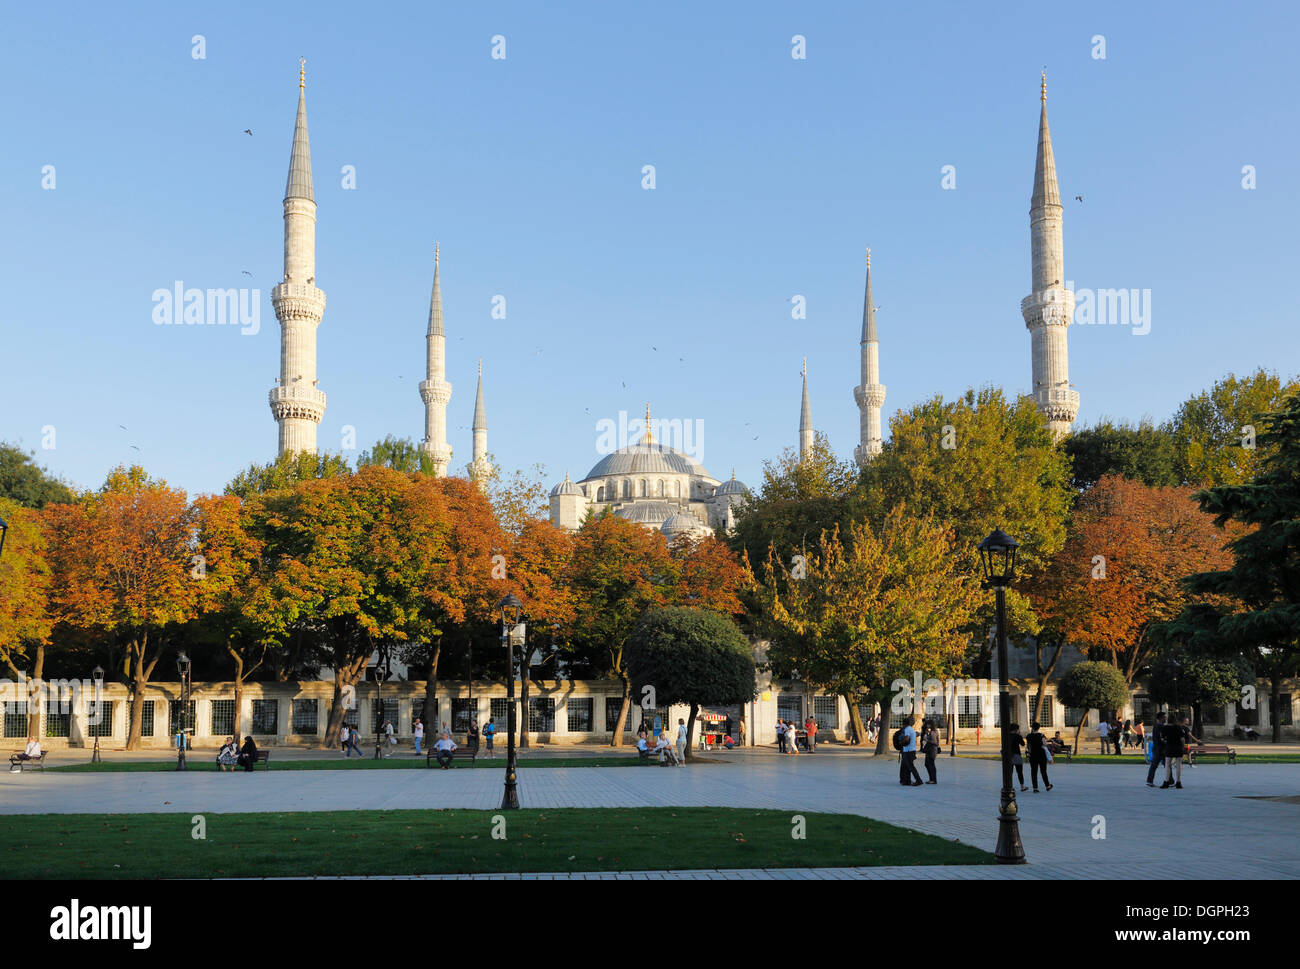 Blaue Moschee oder Sultan Ahmed Mosque oder Sultanahmet Camii, Hippodrom oder bei Meydani-Platz, Istanbul, europäische Seite Stockfoto